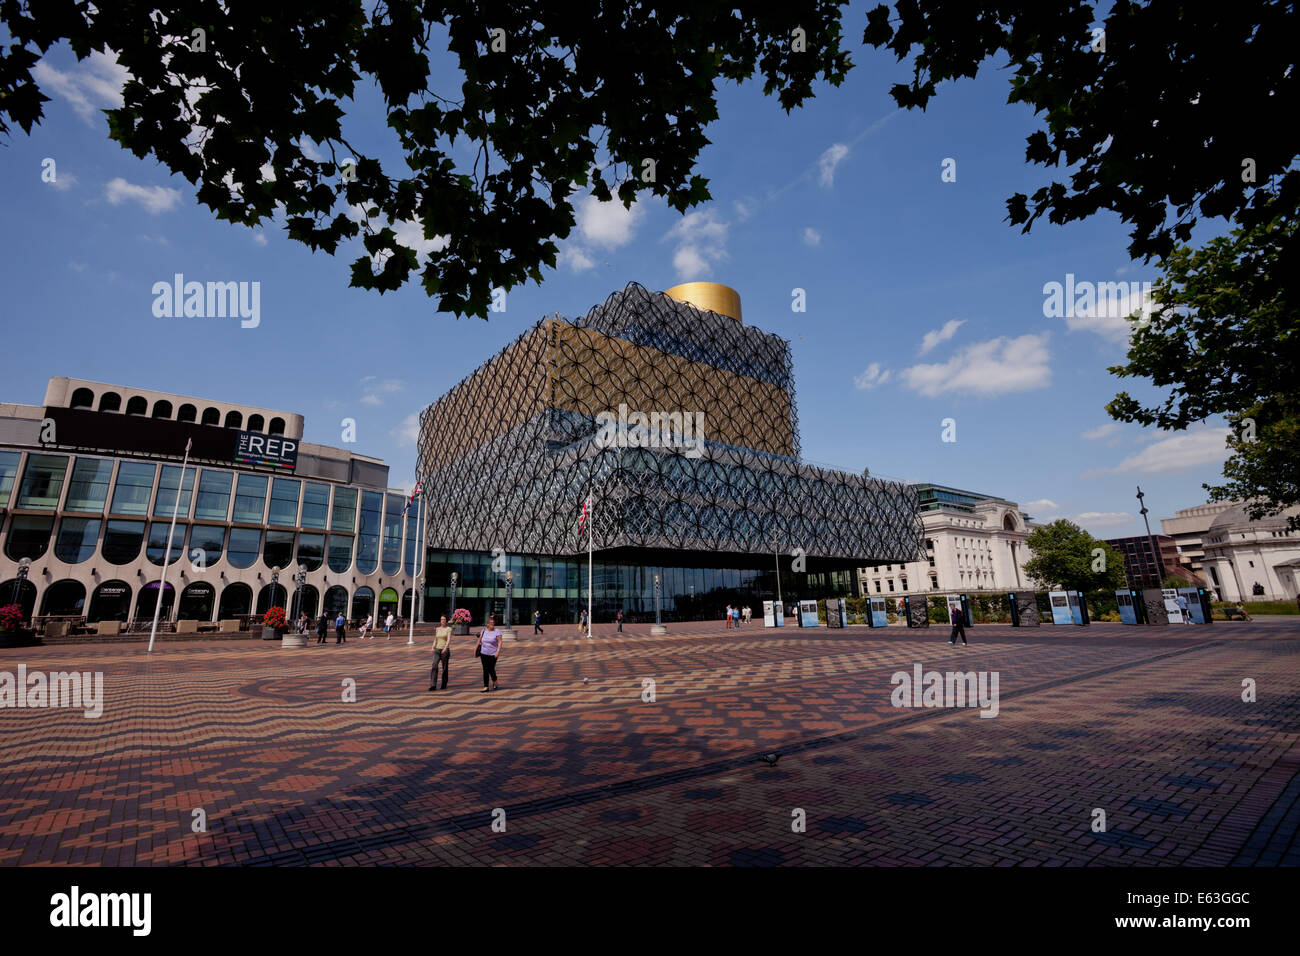 La nouvelle bibliothèque de Birmingham, UK Banque D'Images